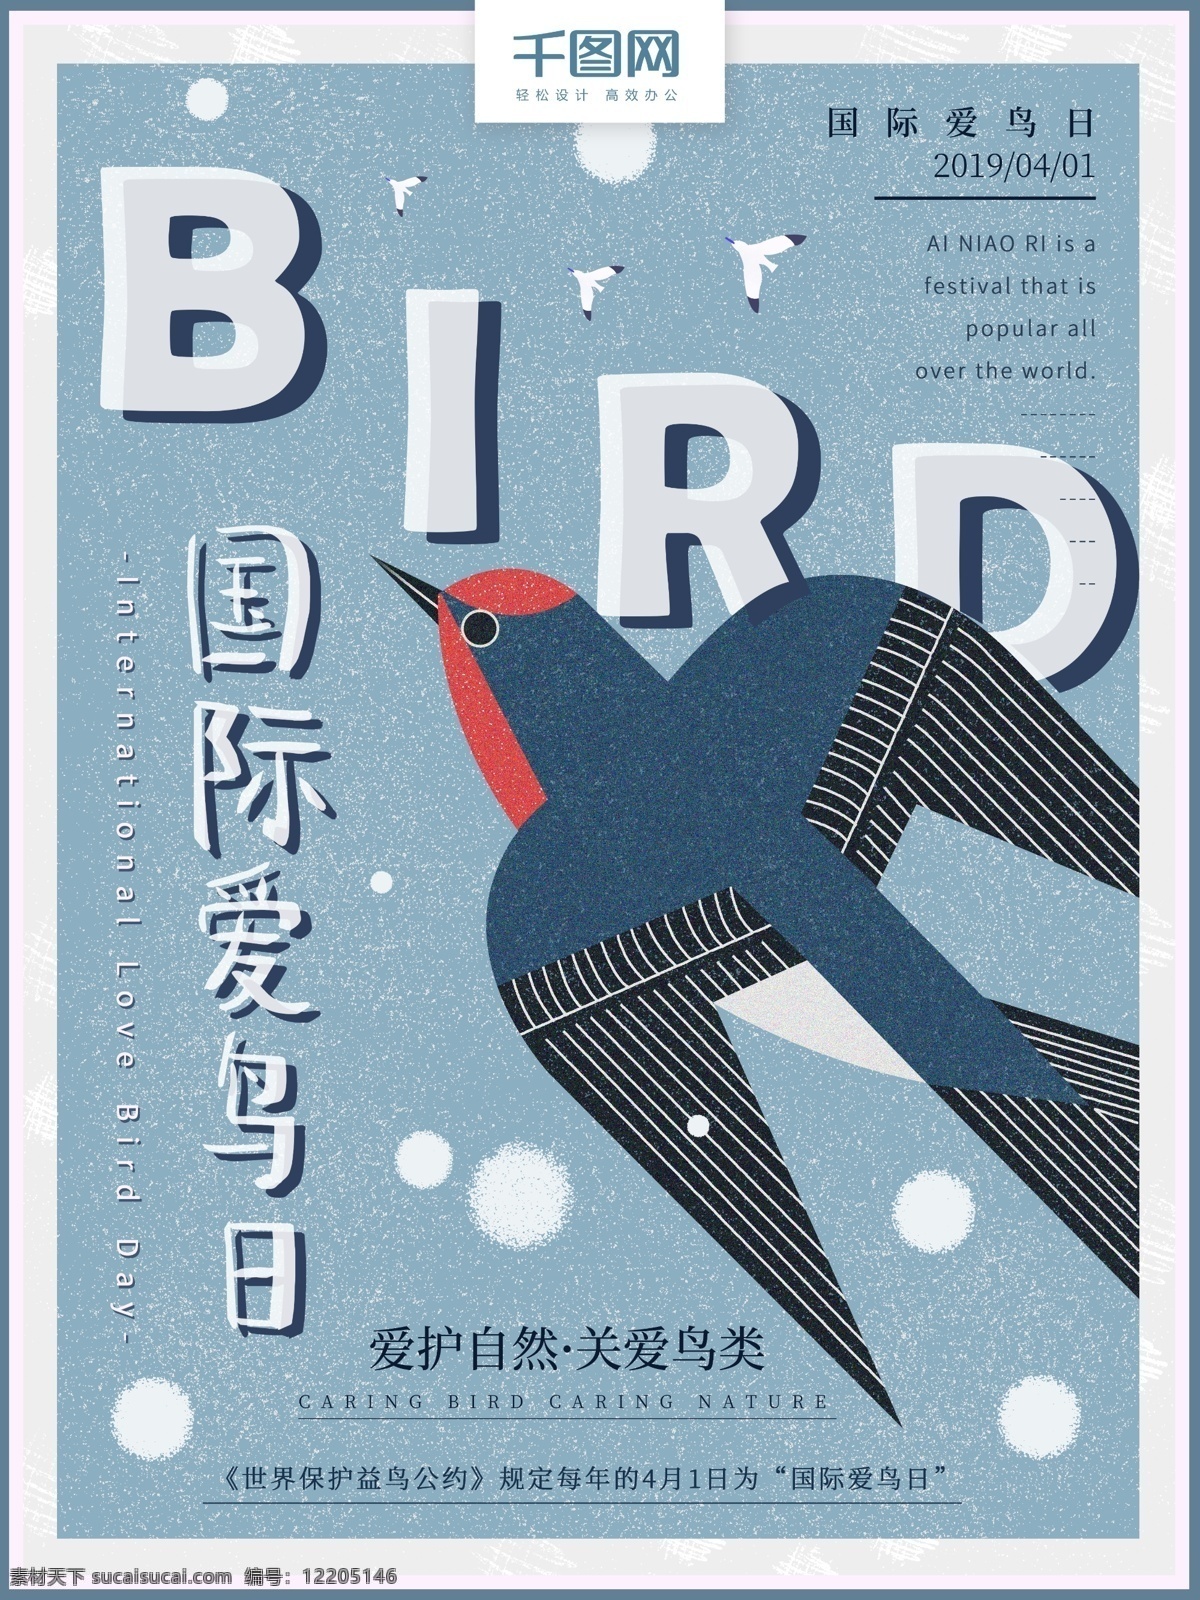 原创 手绘 简约 清新 国际 爱鸟 日 海报 小清新 蓝色 鸟类 鸟 爱鸟日 国际爱鸟日 节日 动物 自然